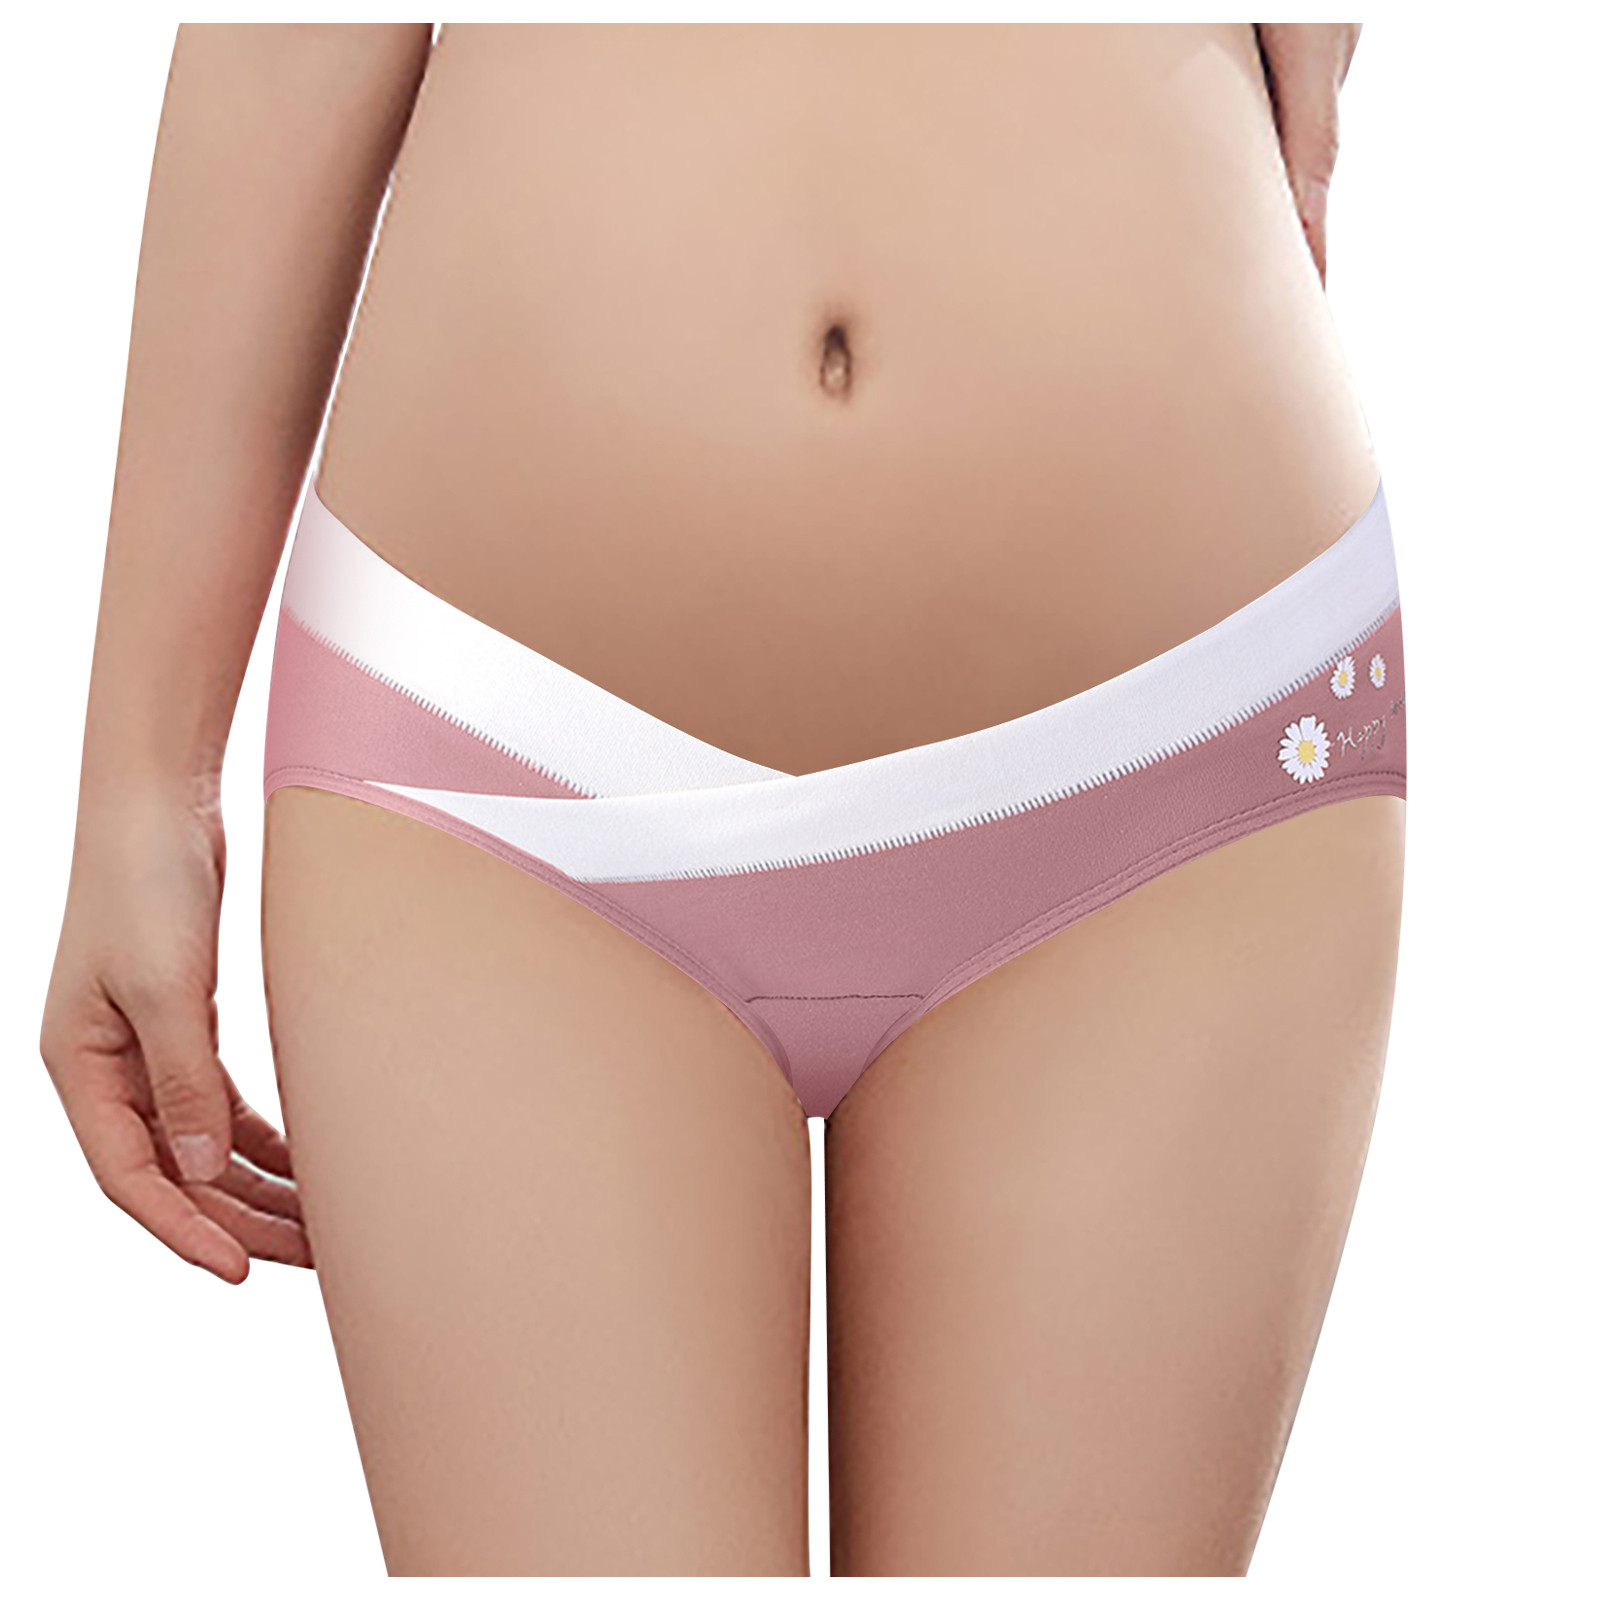 QVPYP ยกทรงระบายอากาศ V-ประเภทต่ำเอวหญิงตั้งครรภ์กางเกงกางเกงในสตรีมีครรภ์การตั้งครรภ์กางเกงขาสั้นกางเกงขาสั้น